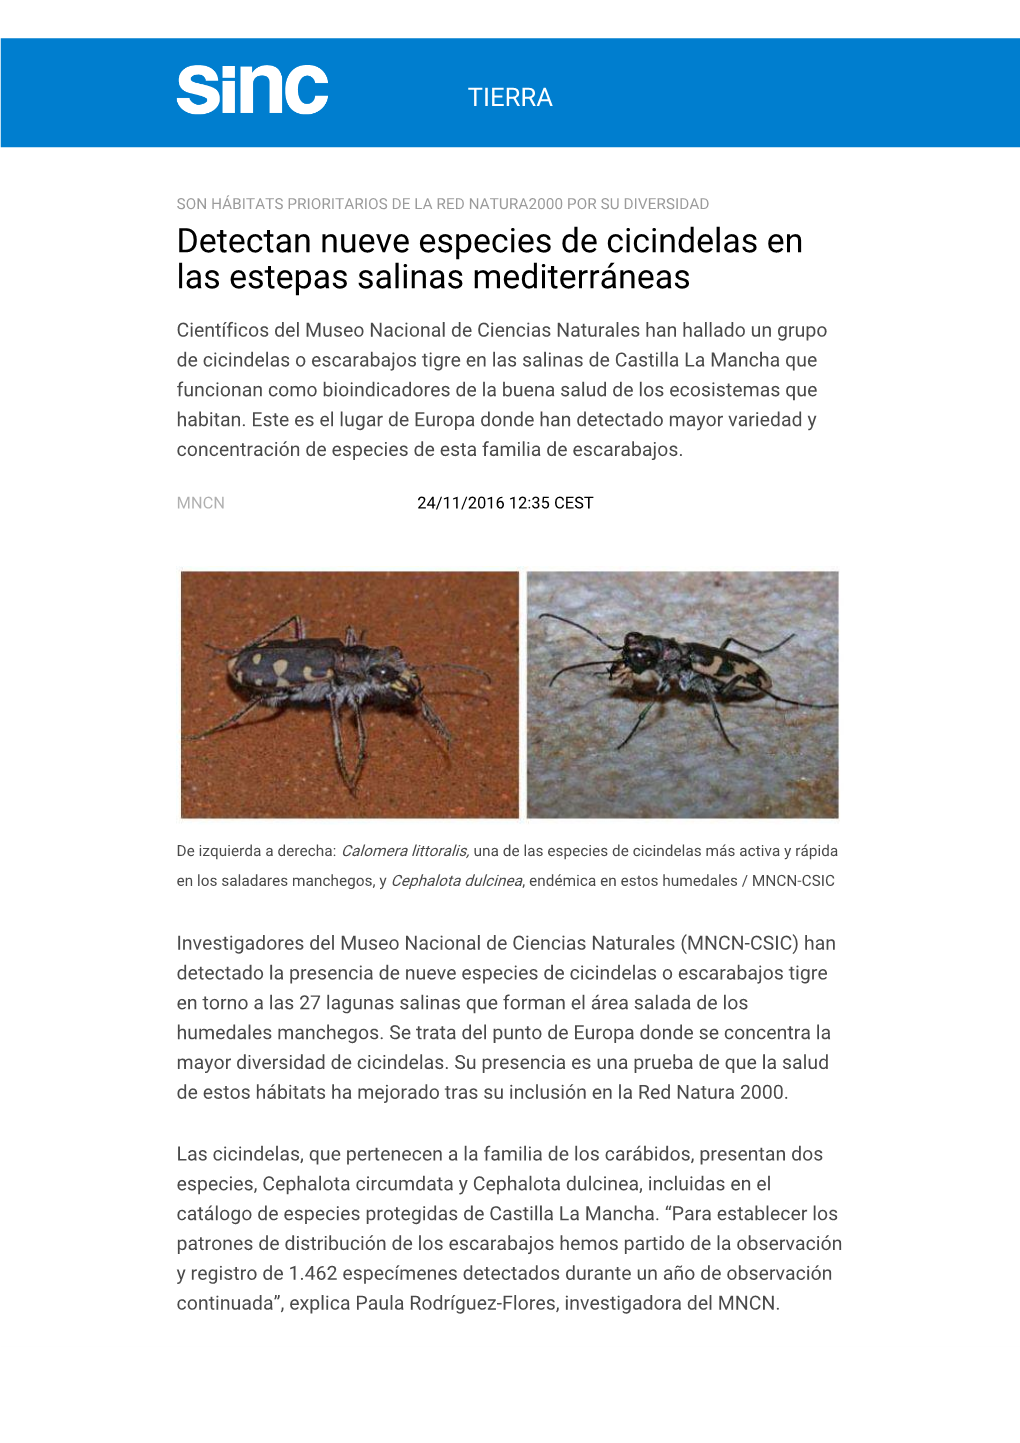 Detectan Nueve Especies De Cicindelas En Las Estepas Salinas Mediterráneas